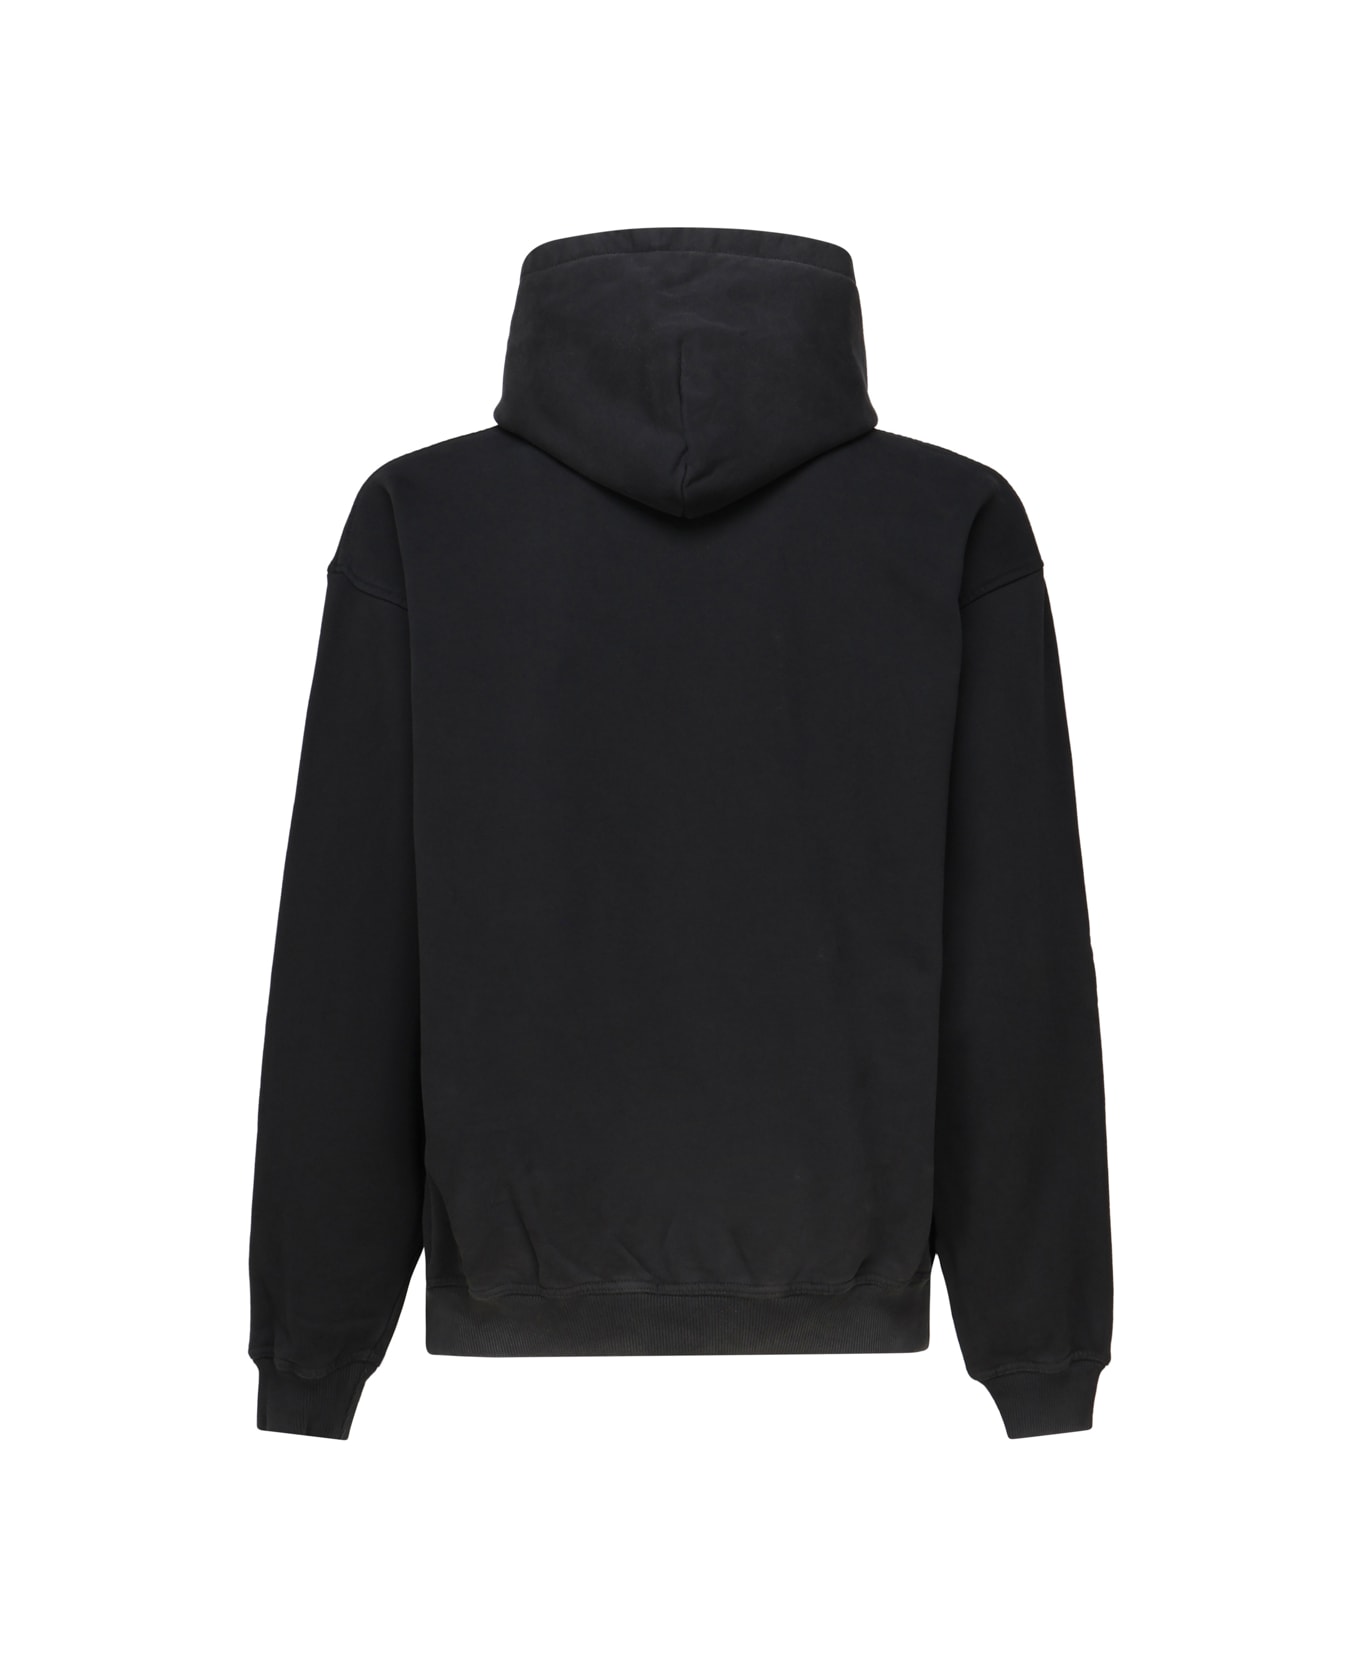 REPRESENT Vintage Hooded Sweatshirt In Cotton - Vintage black